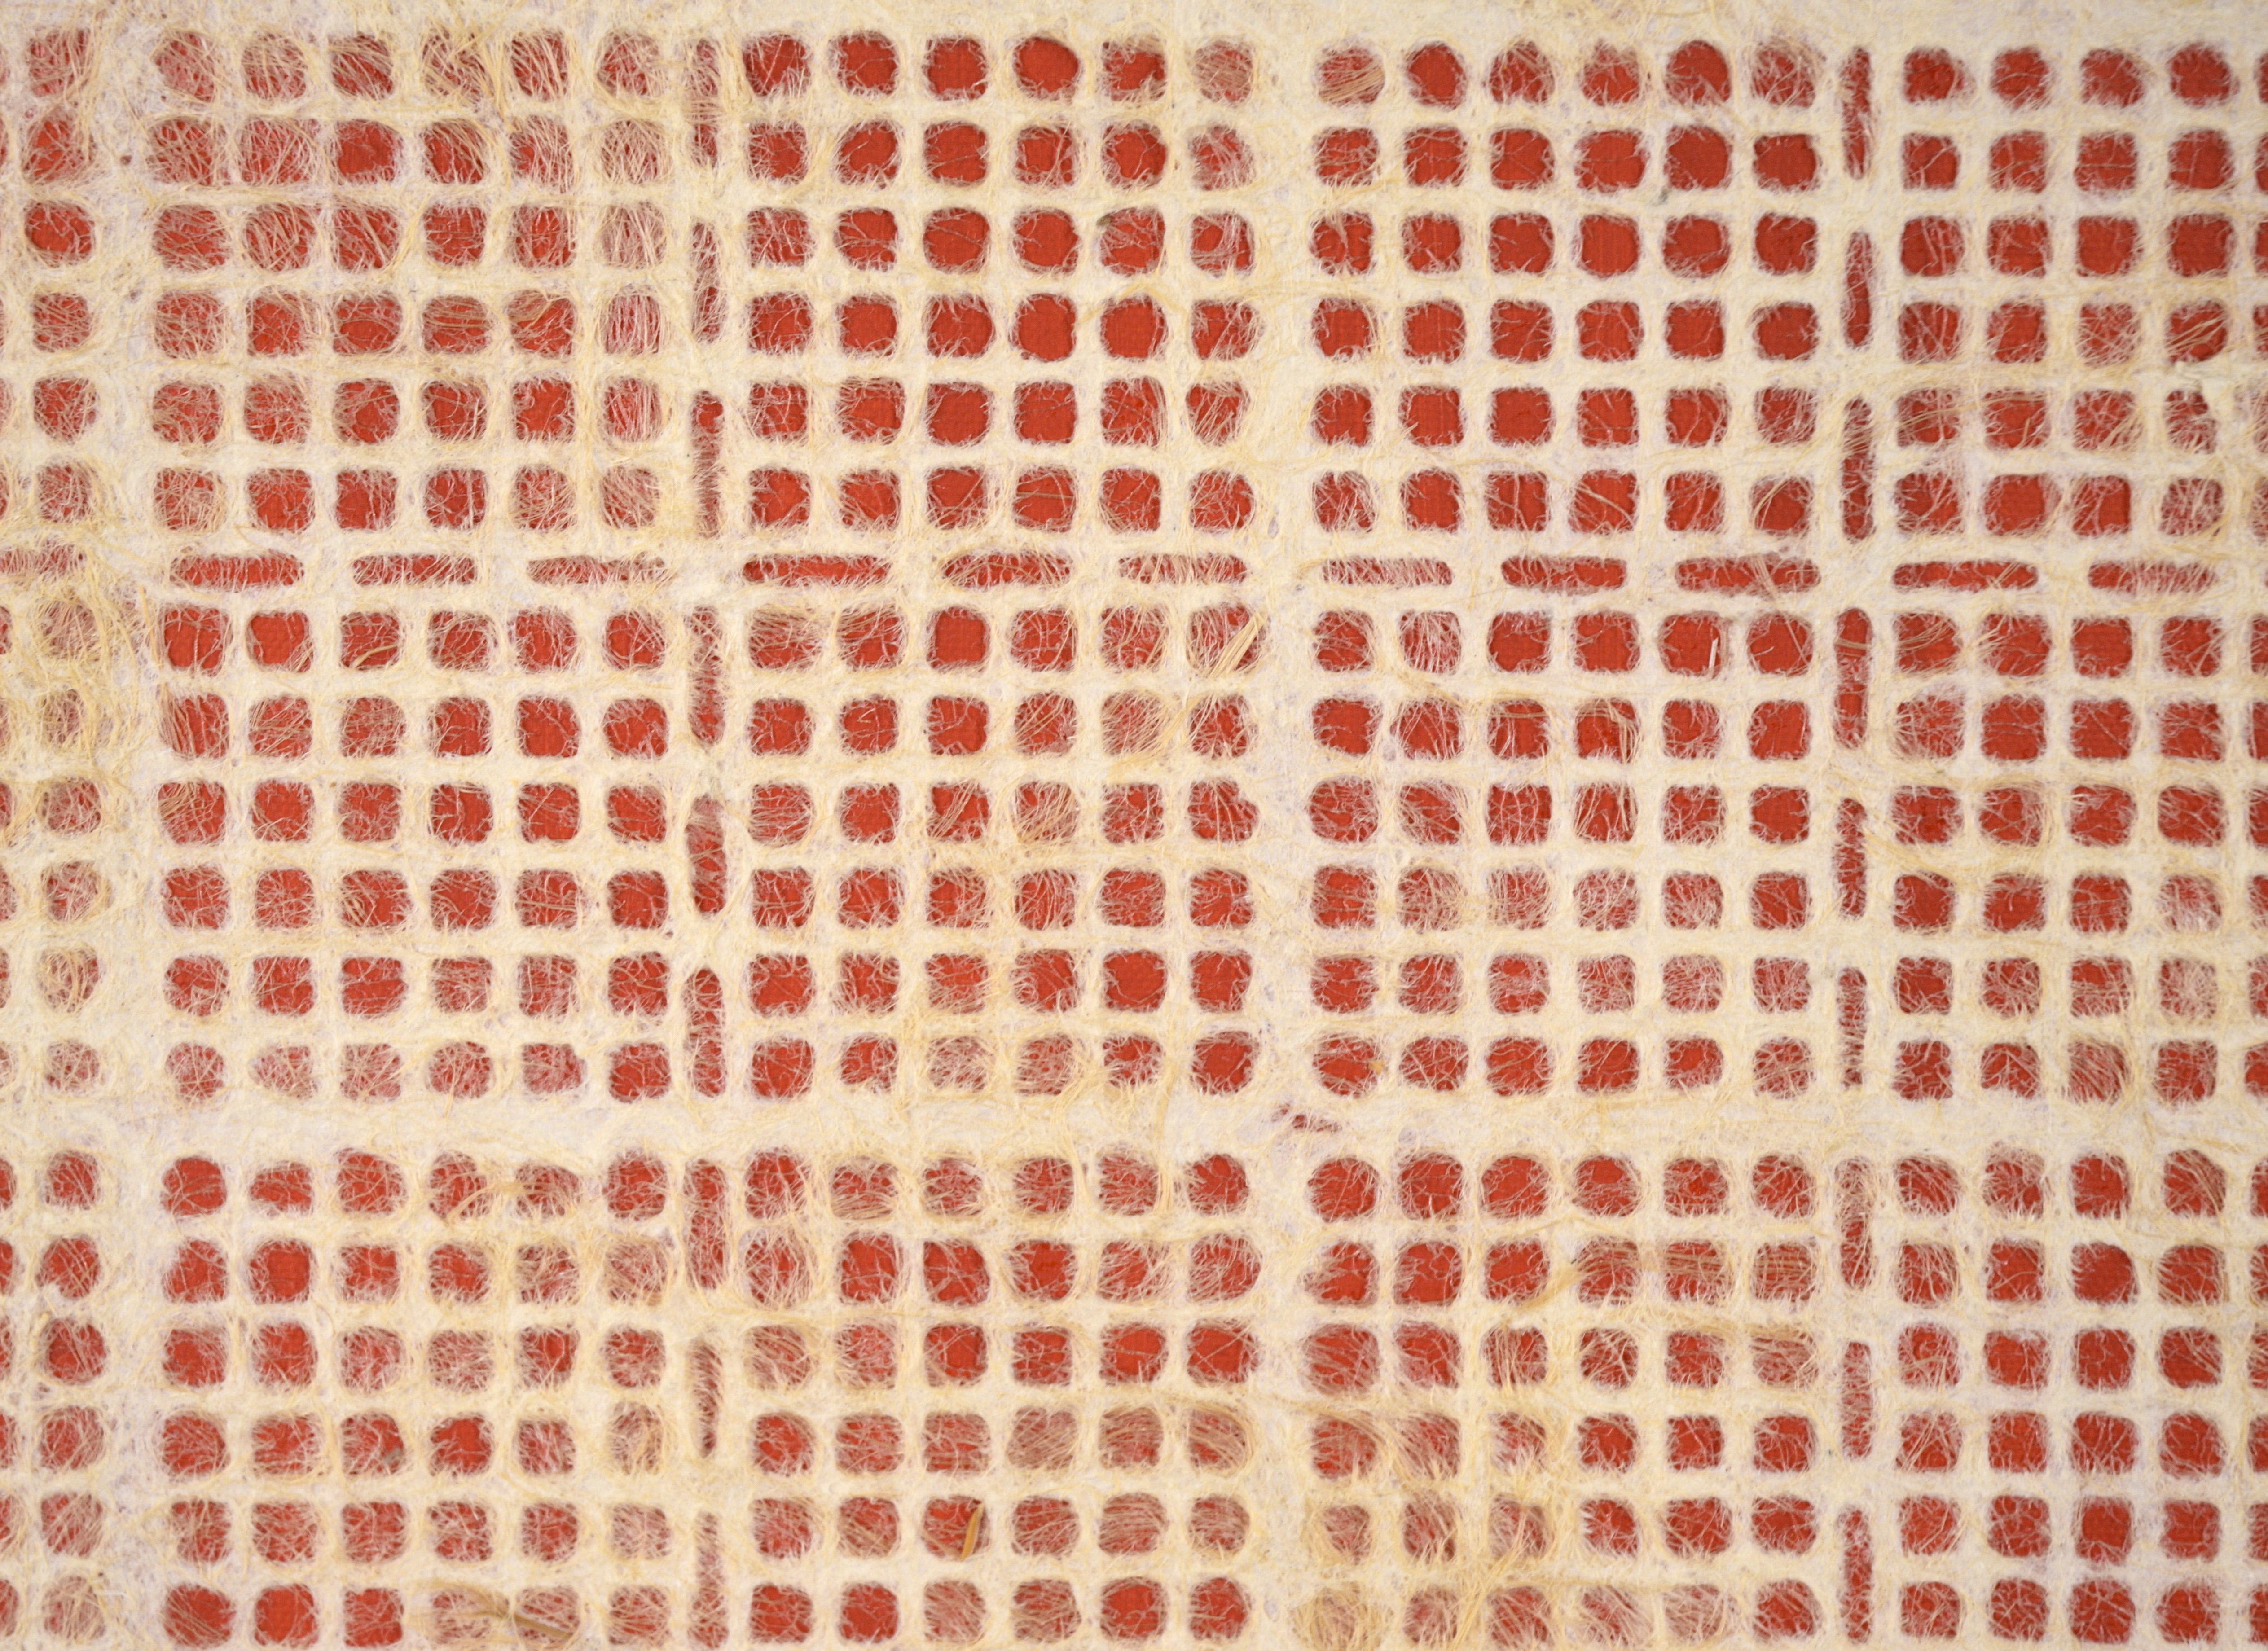 Composition géométrique abstraite avec papier fait main, fibres et acrylique sur toile (rouge)

Composition abstraite fantaisiste d'un artiste inconnu (20e siècle). La peinture acrylique rouge constitue l'arrière-plan de cette composition.